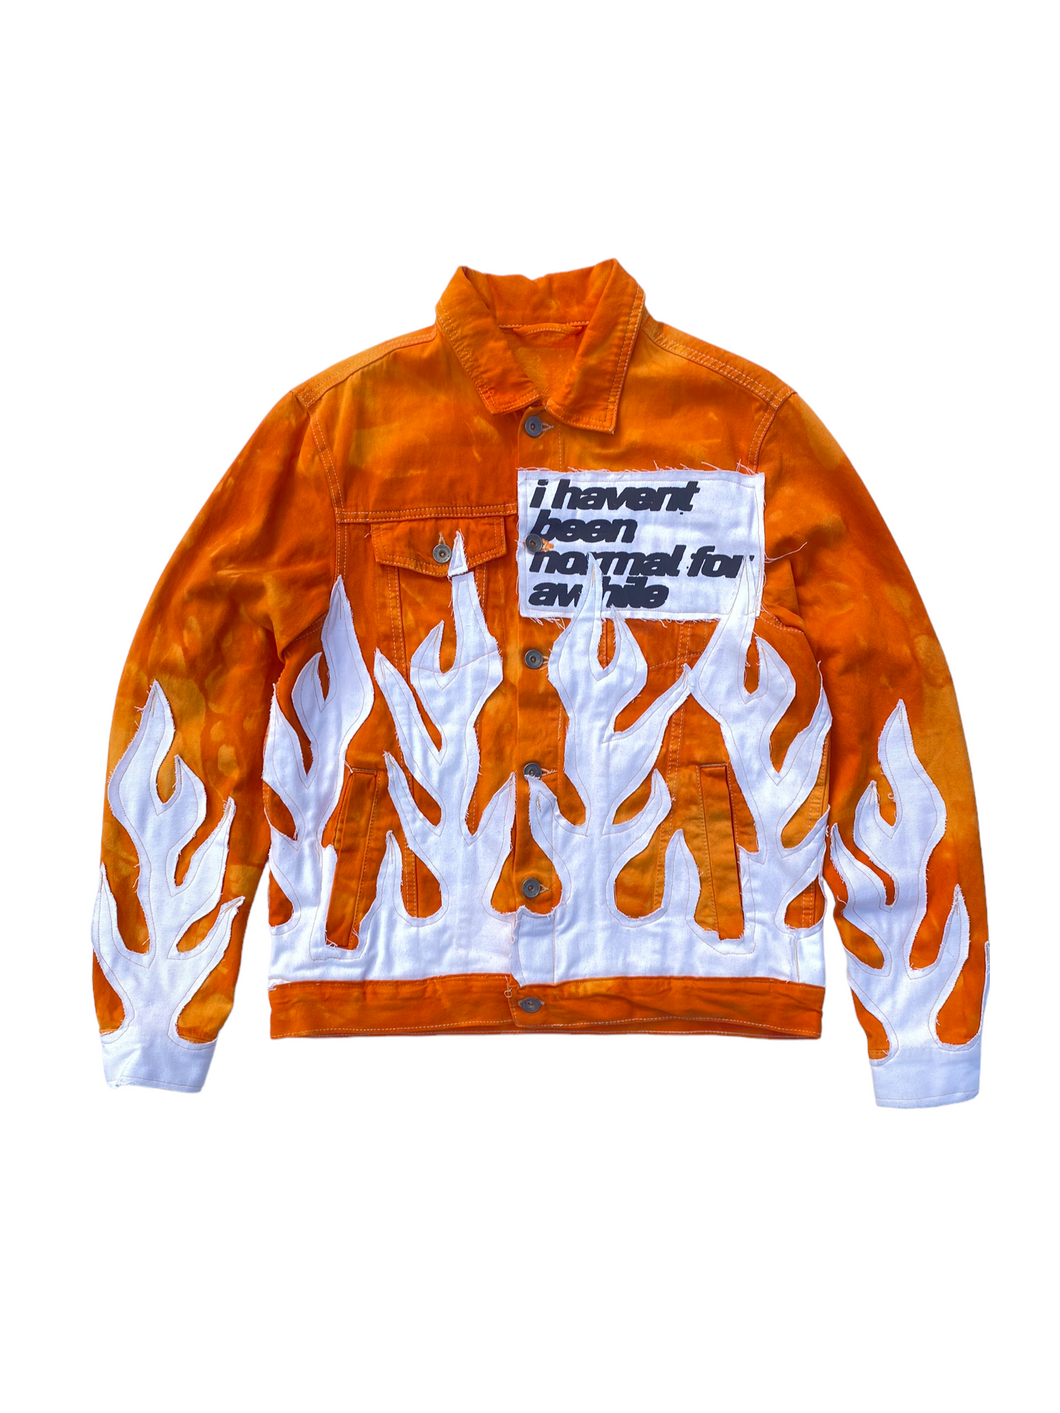 orange/white flame jacket